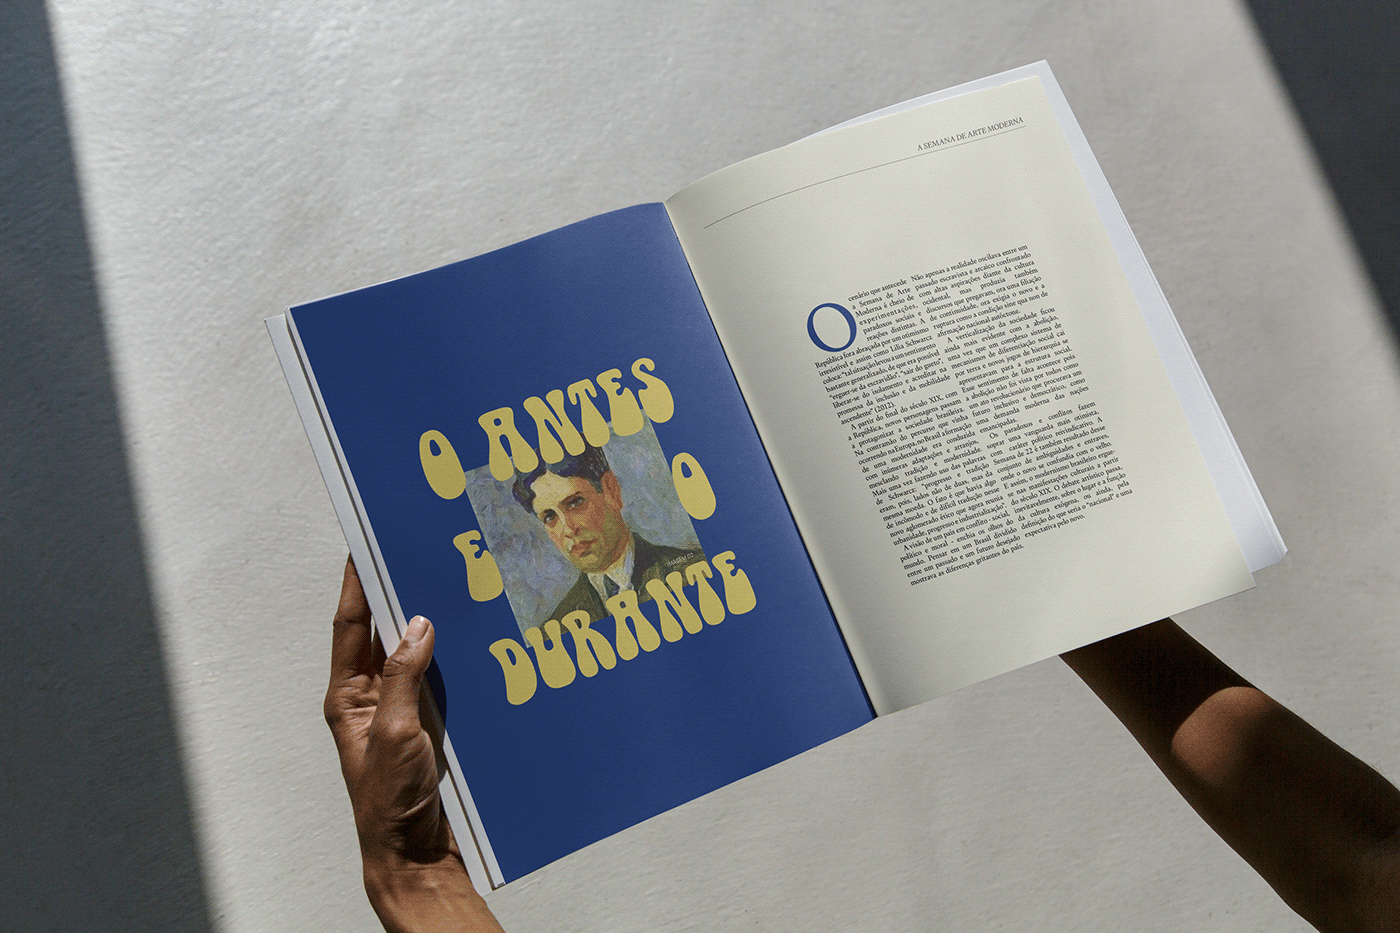 magazine Layout editorial design  typography   visual identity Graphic Designer ilustração Digital art revistas arte moderna brasileira